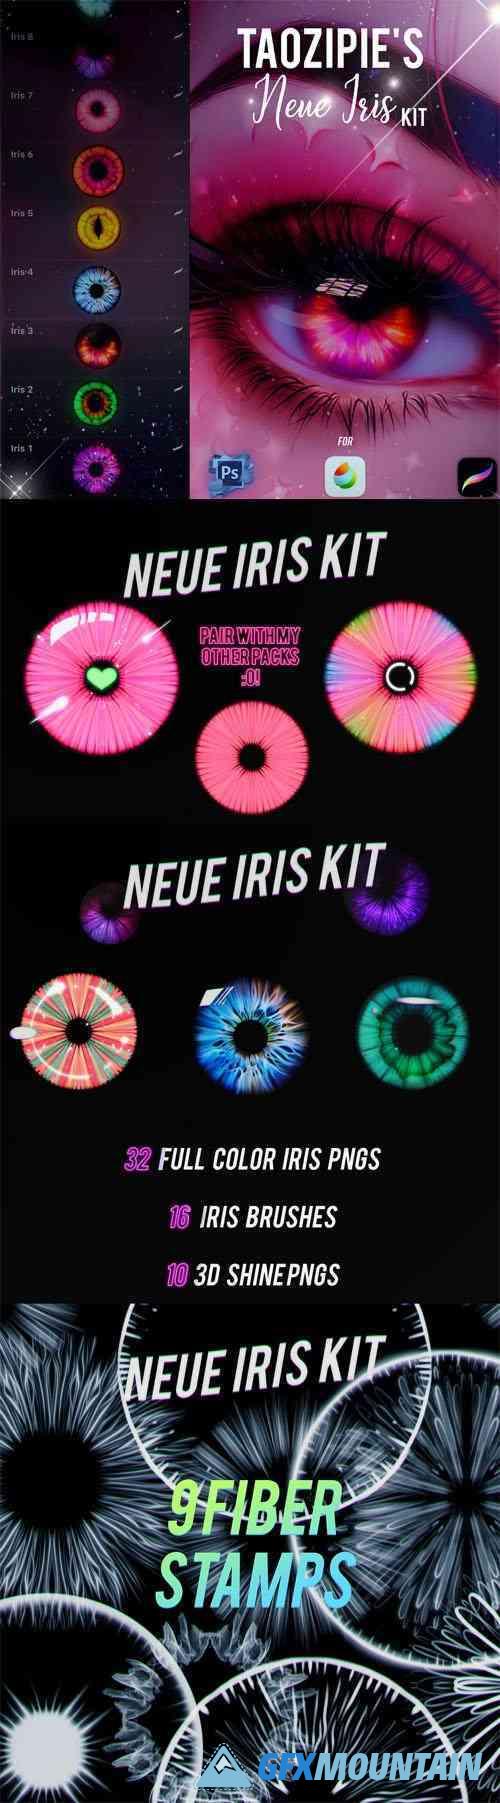 Iris Kit - Brushes Pack for Photoshop/Procreate/Medibang